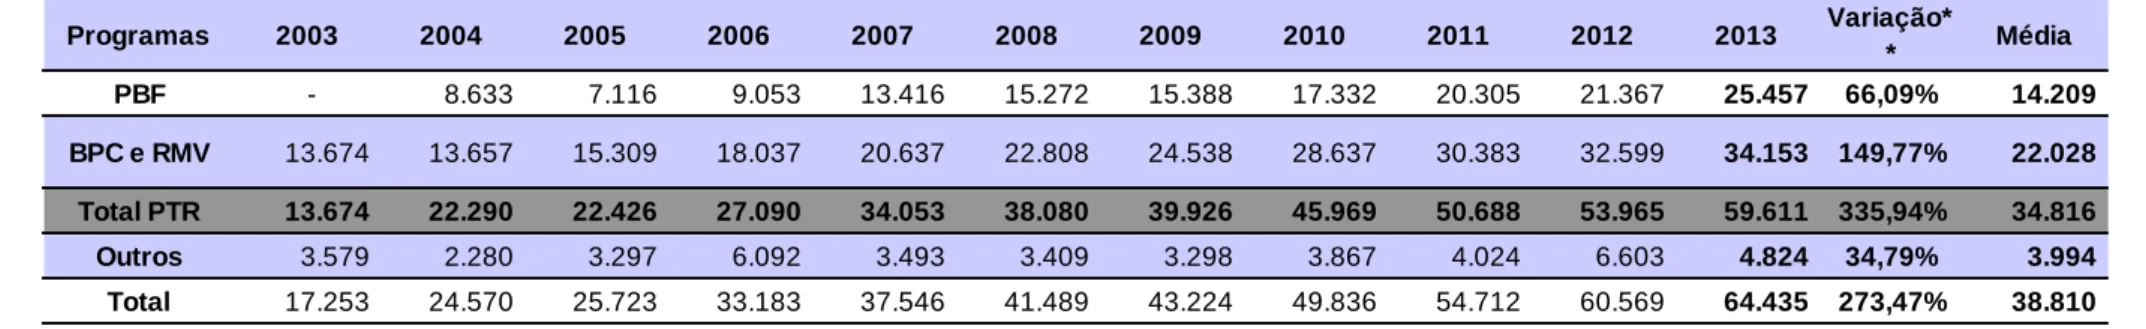 Tabela 10: Principais Programas da Política de Assistência Social (2003-2013), em R$ milhões*